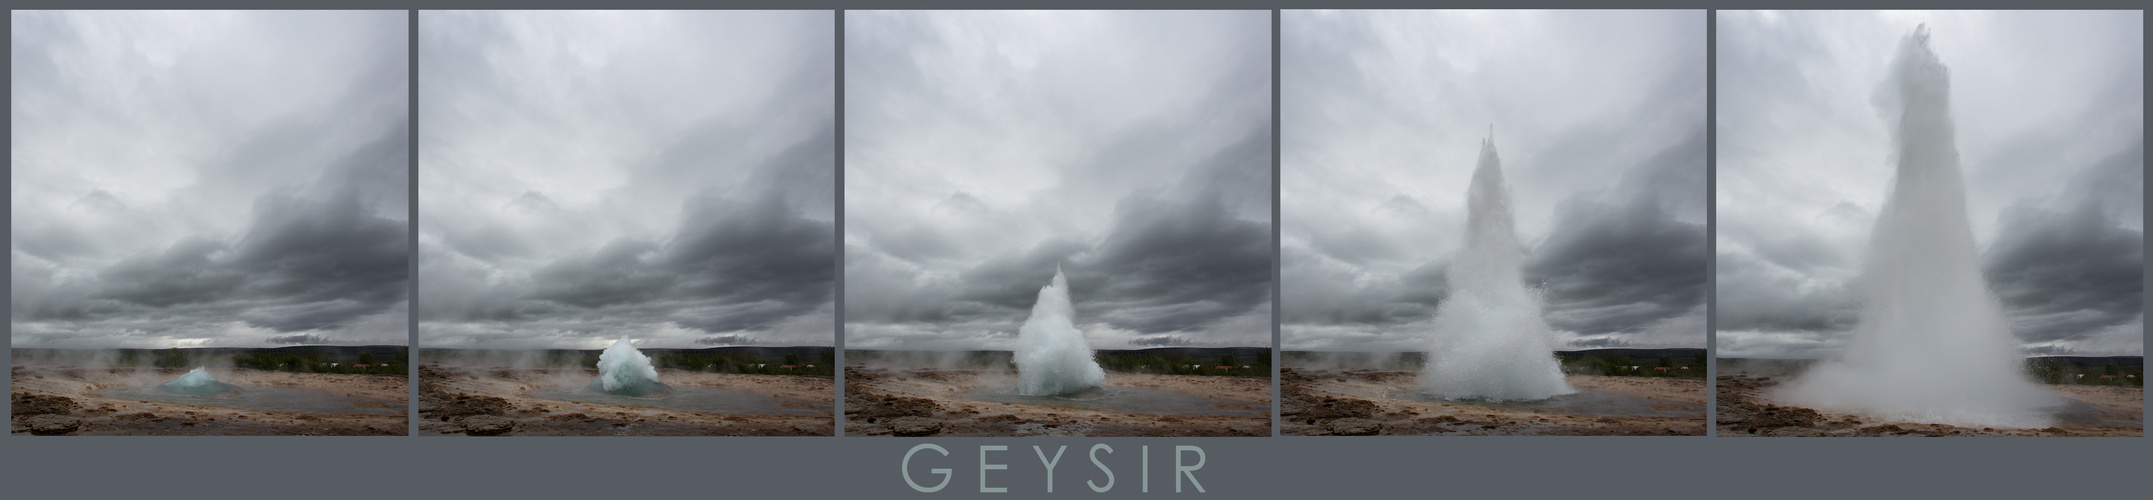 Geysir - Island